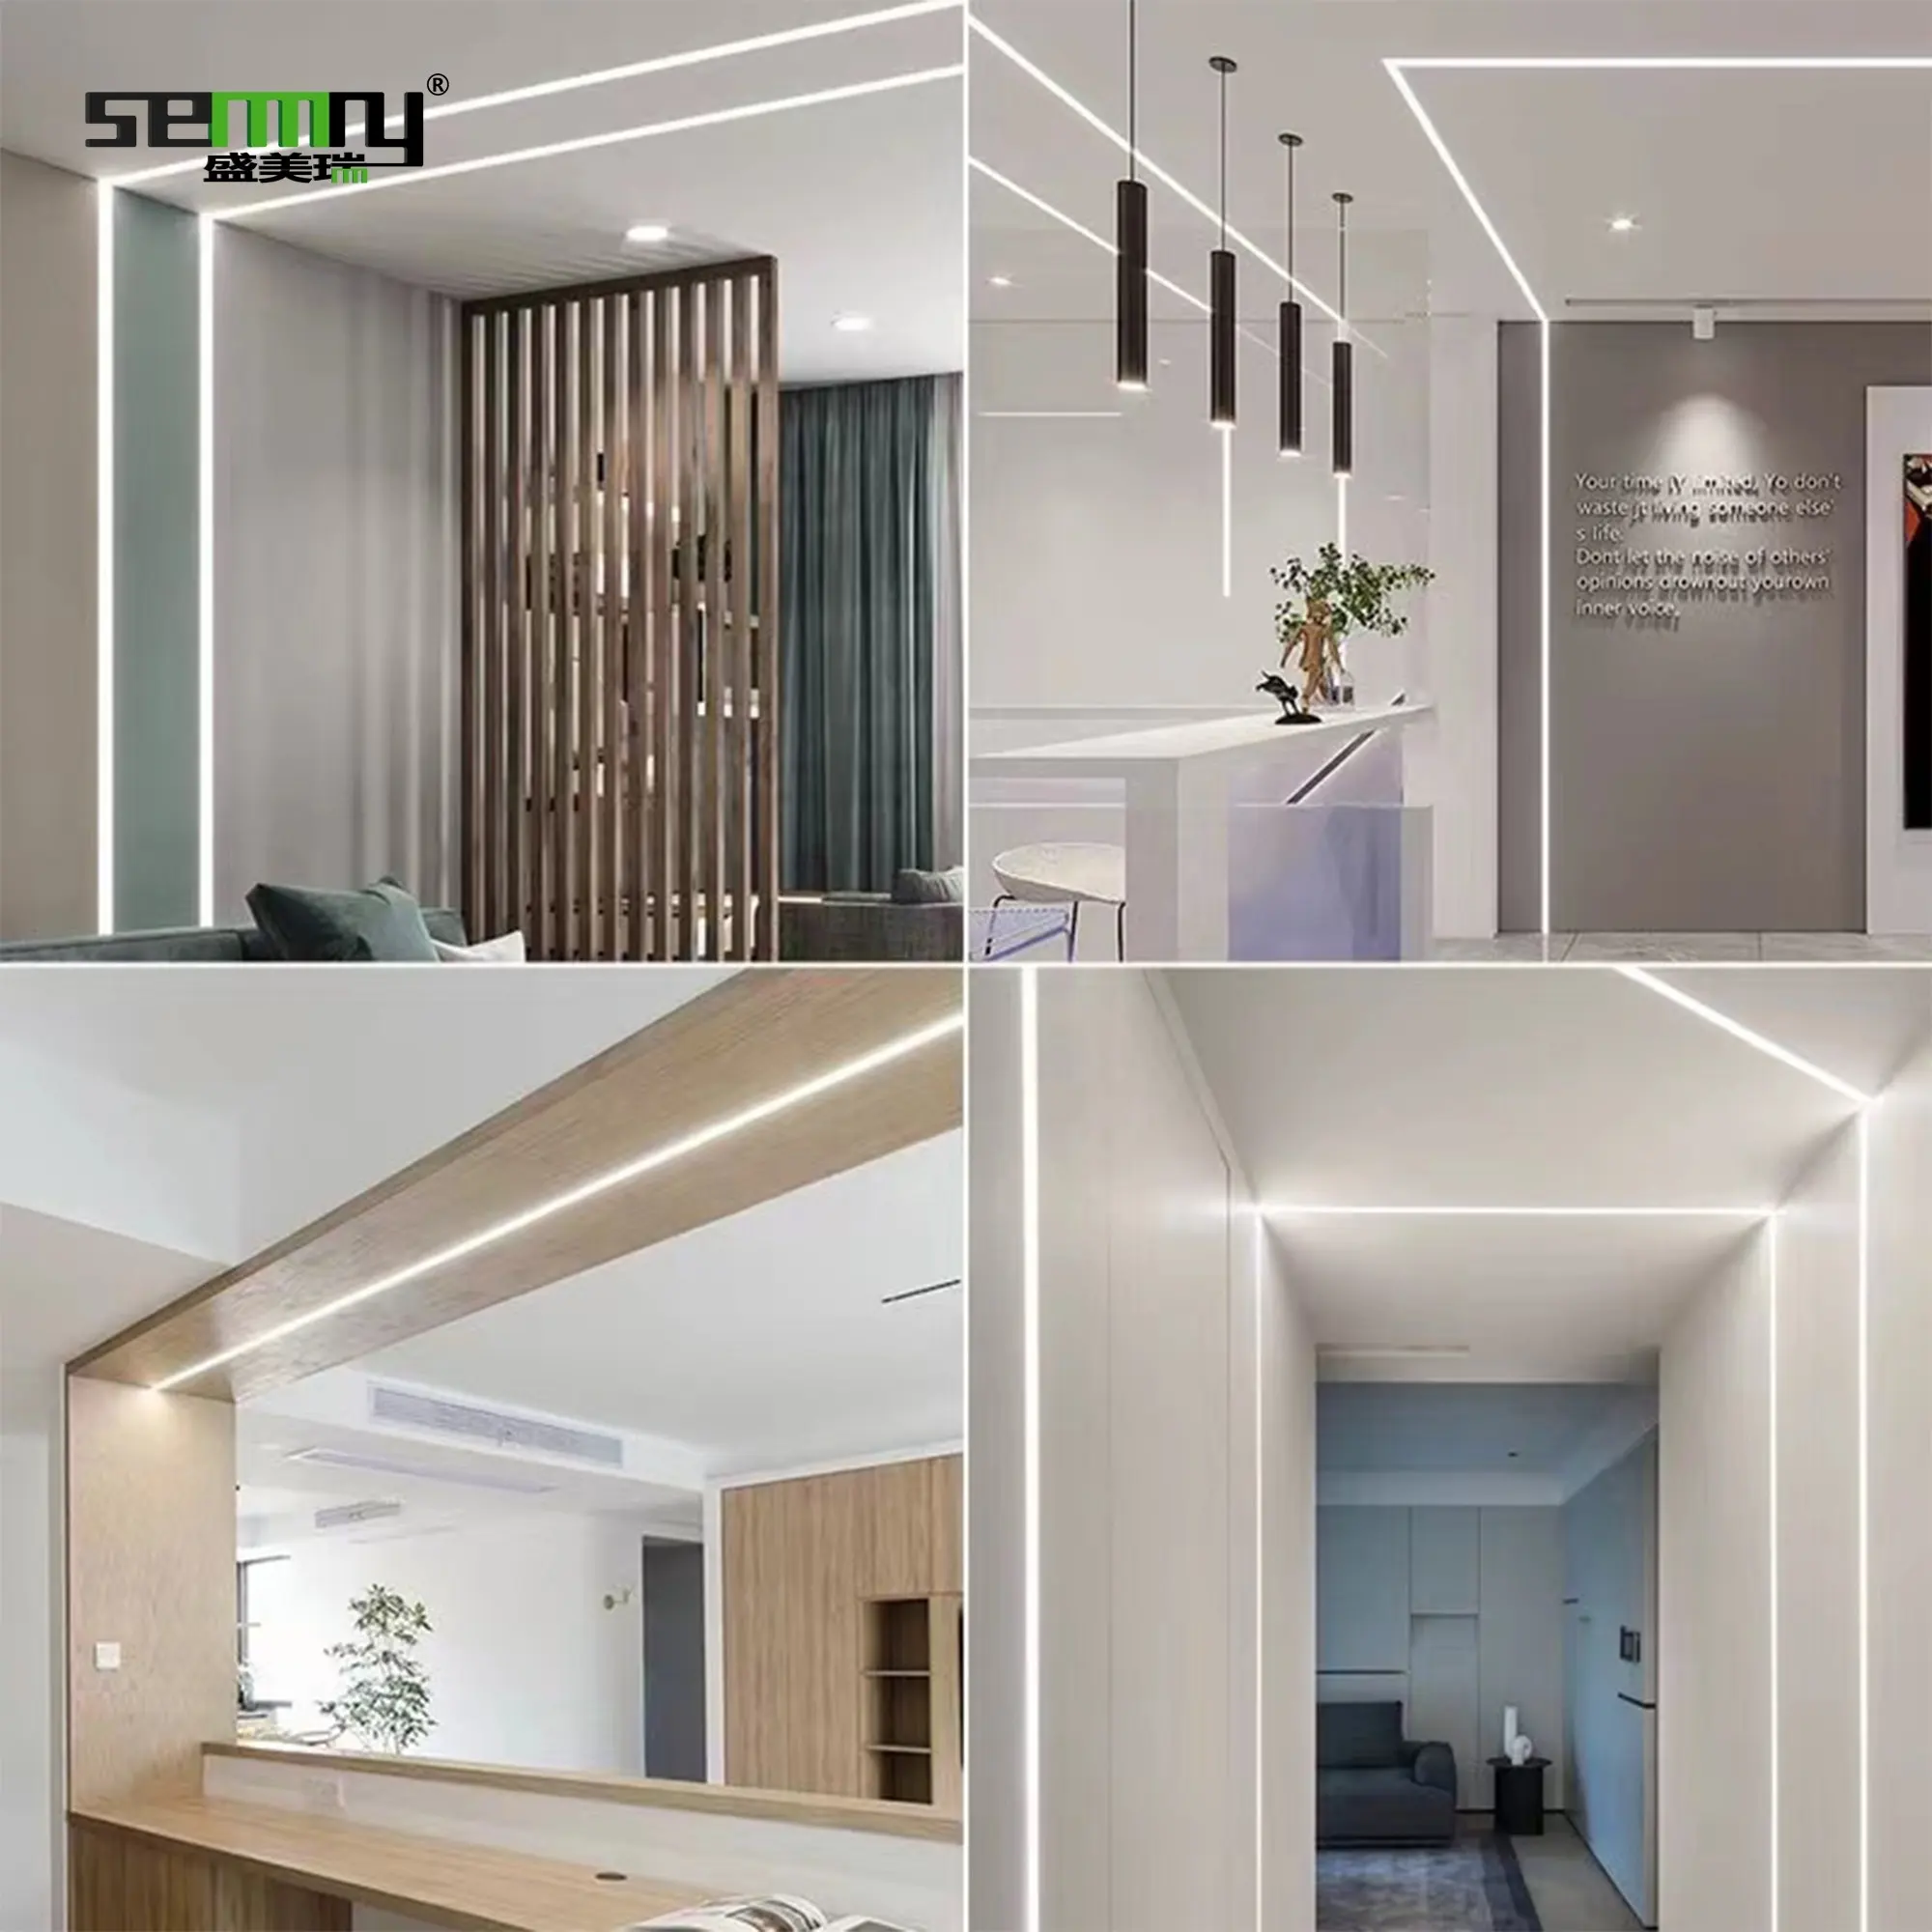 Per soffitto Alu Profil Channel incasso architettonico cartongesso unilaterale gesso in alluminio LED